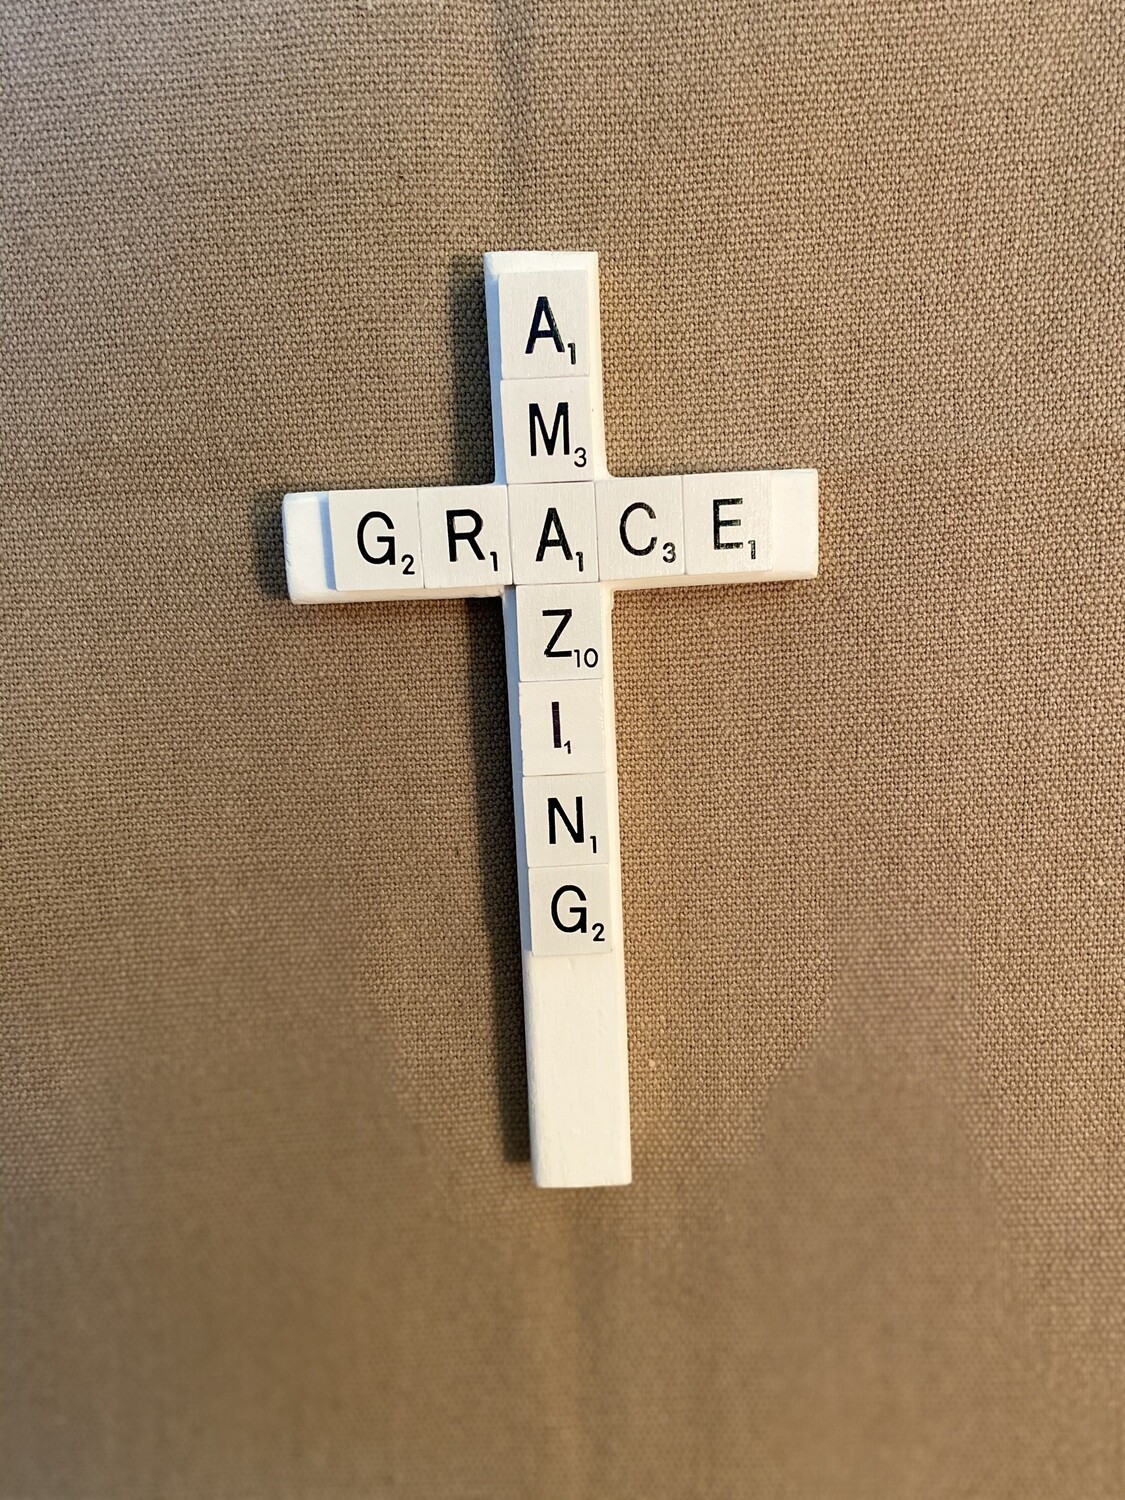 Amazing Grace Lg Scrabble Cross 8&quot;L x 4.5&quot;H